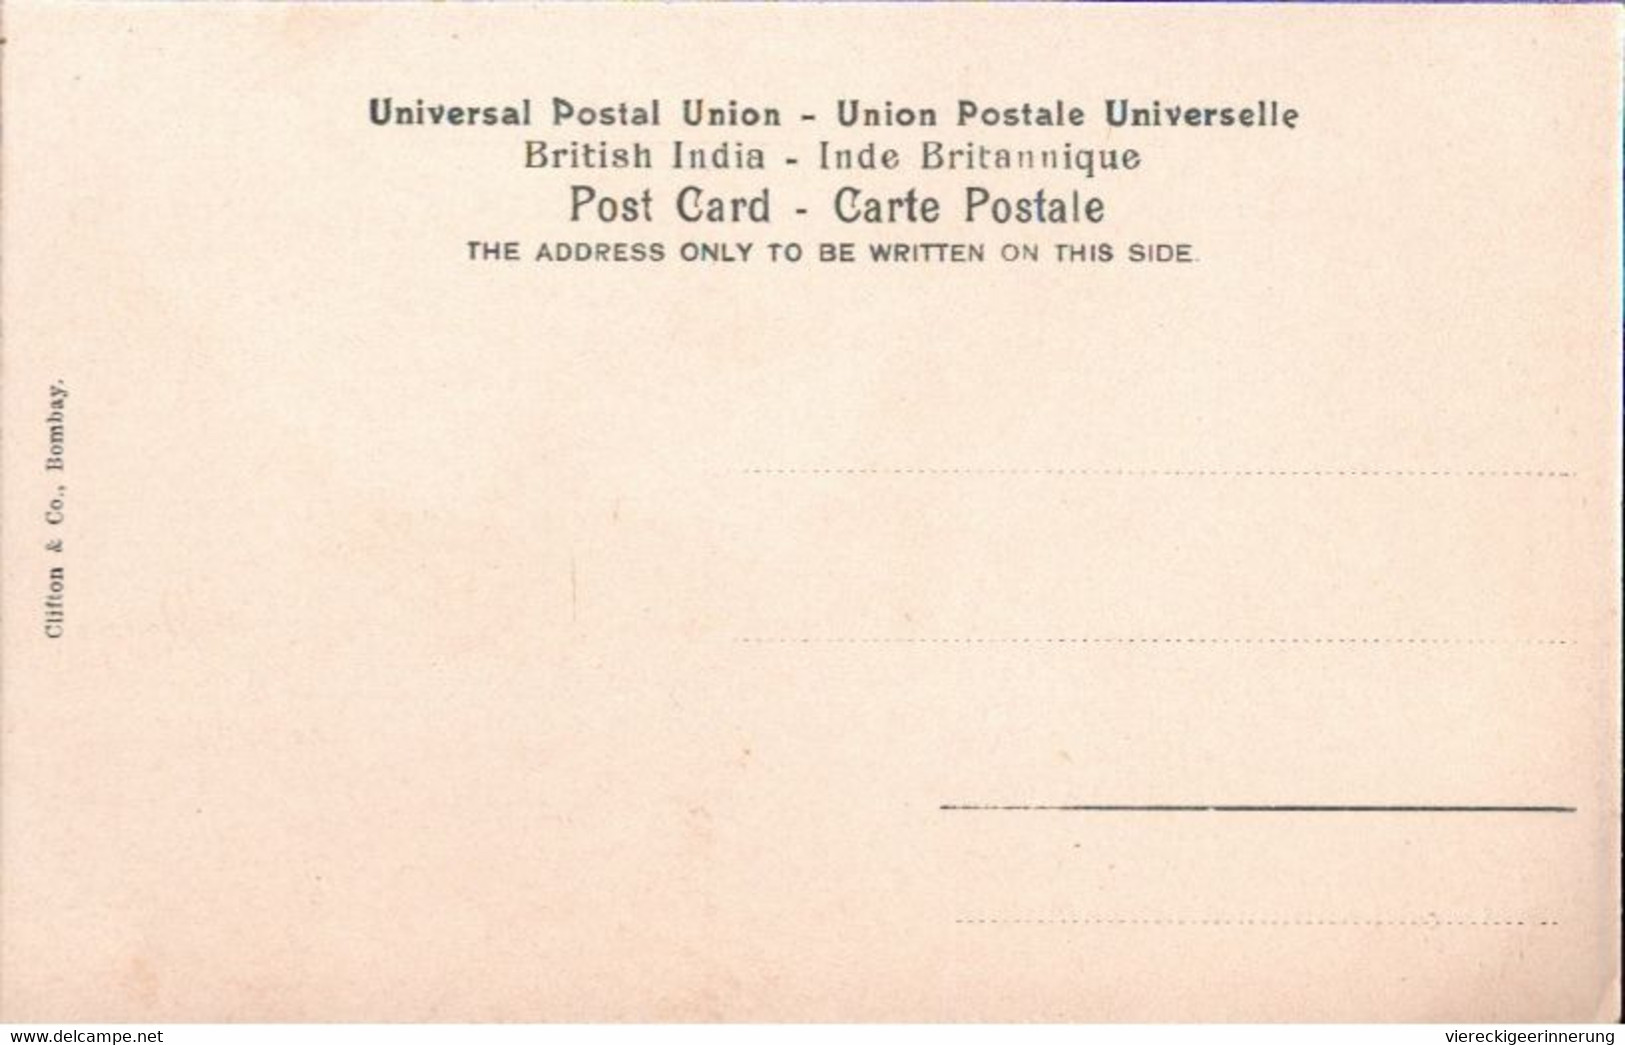 ! Old Postcard, Alte Ansichtskarte Aus Bombay, Indien, India, Impfung Gegen Die Pest, Inoculation Against Plague Medcine - Inde